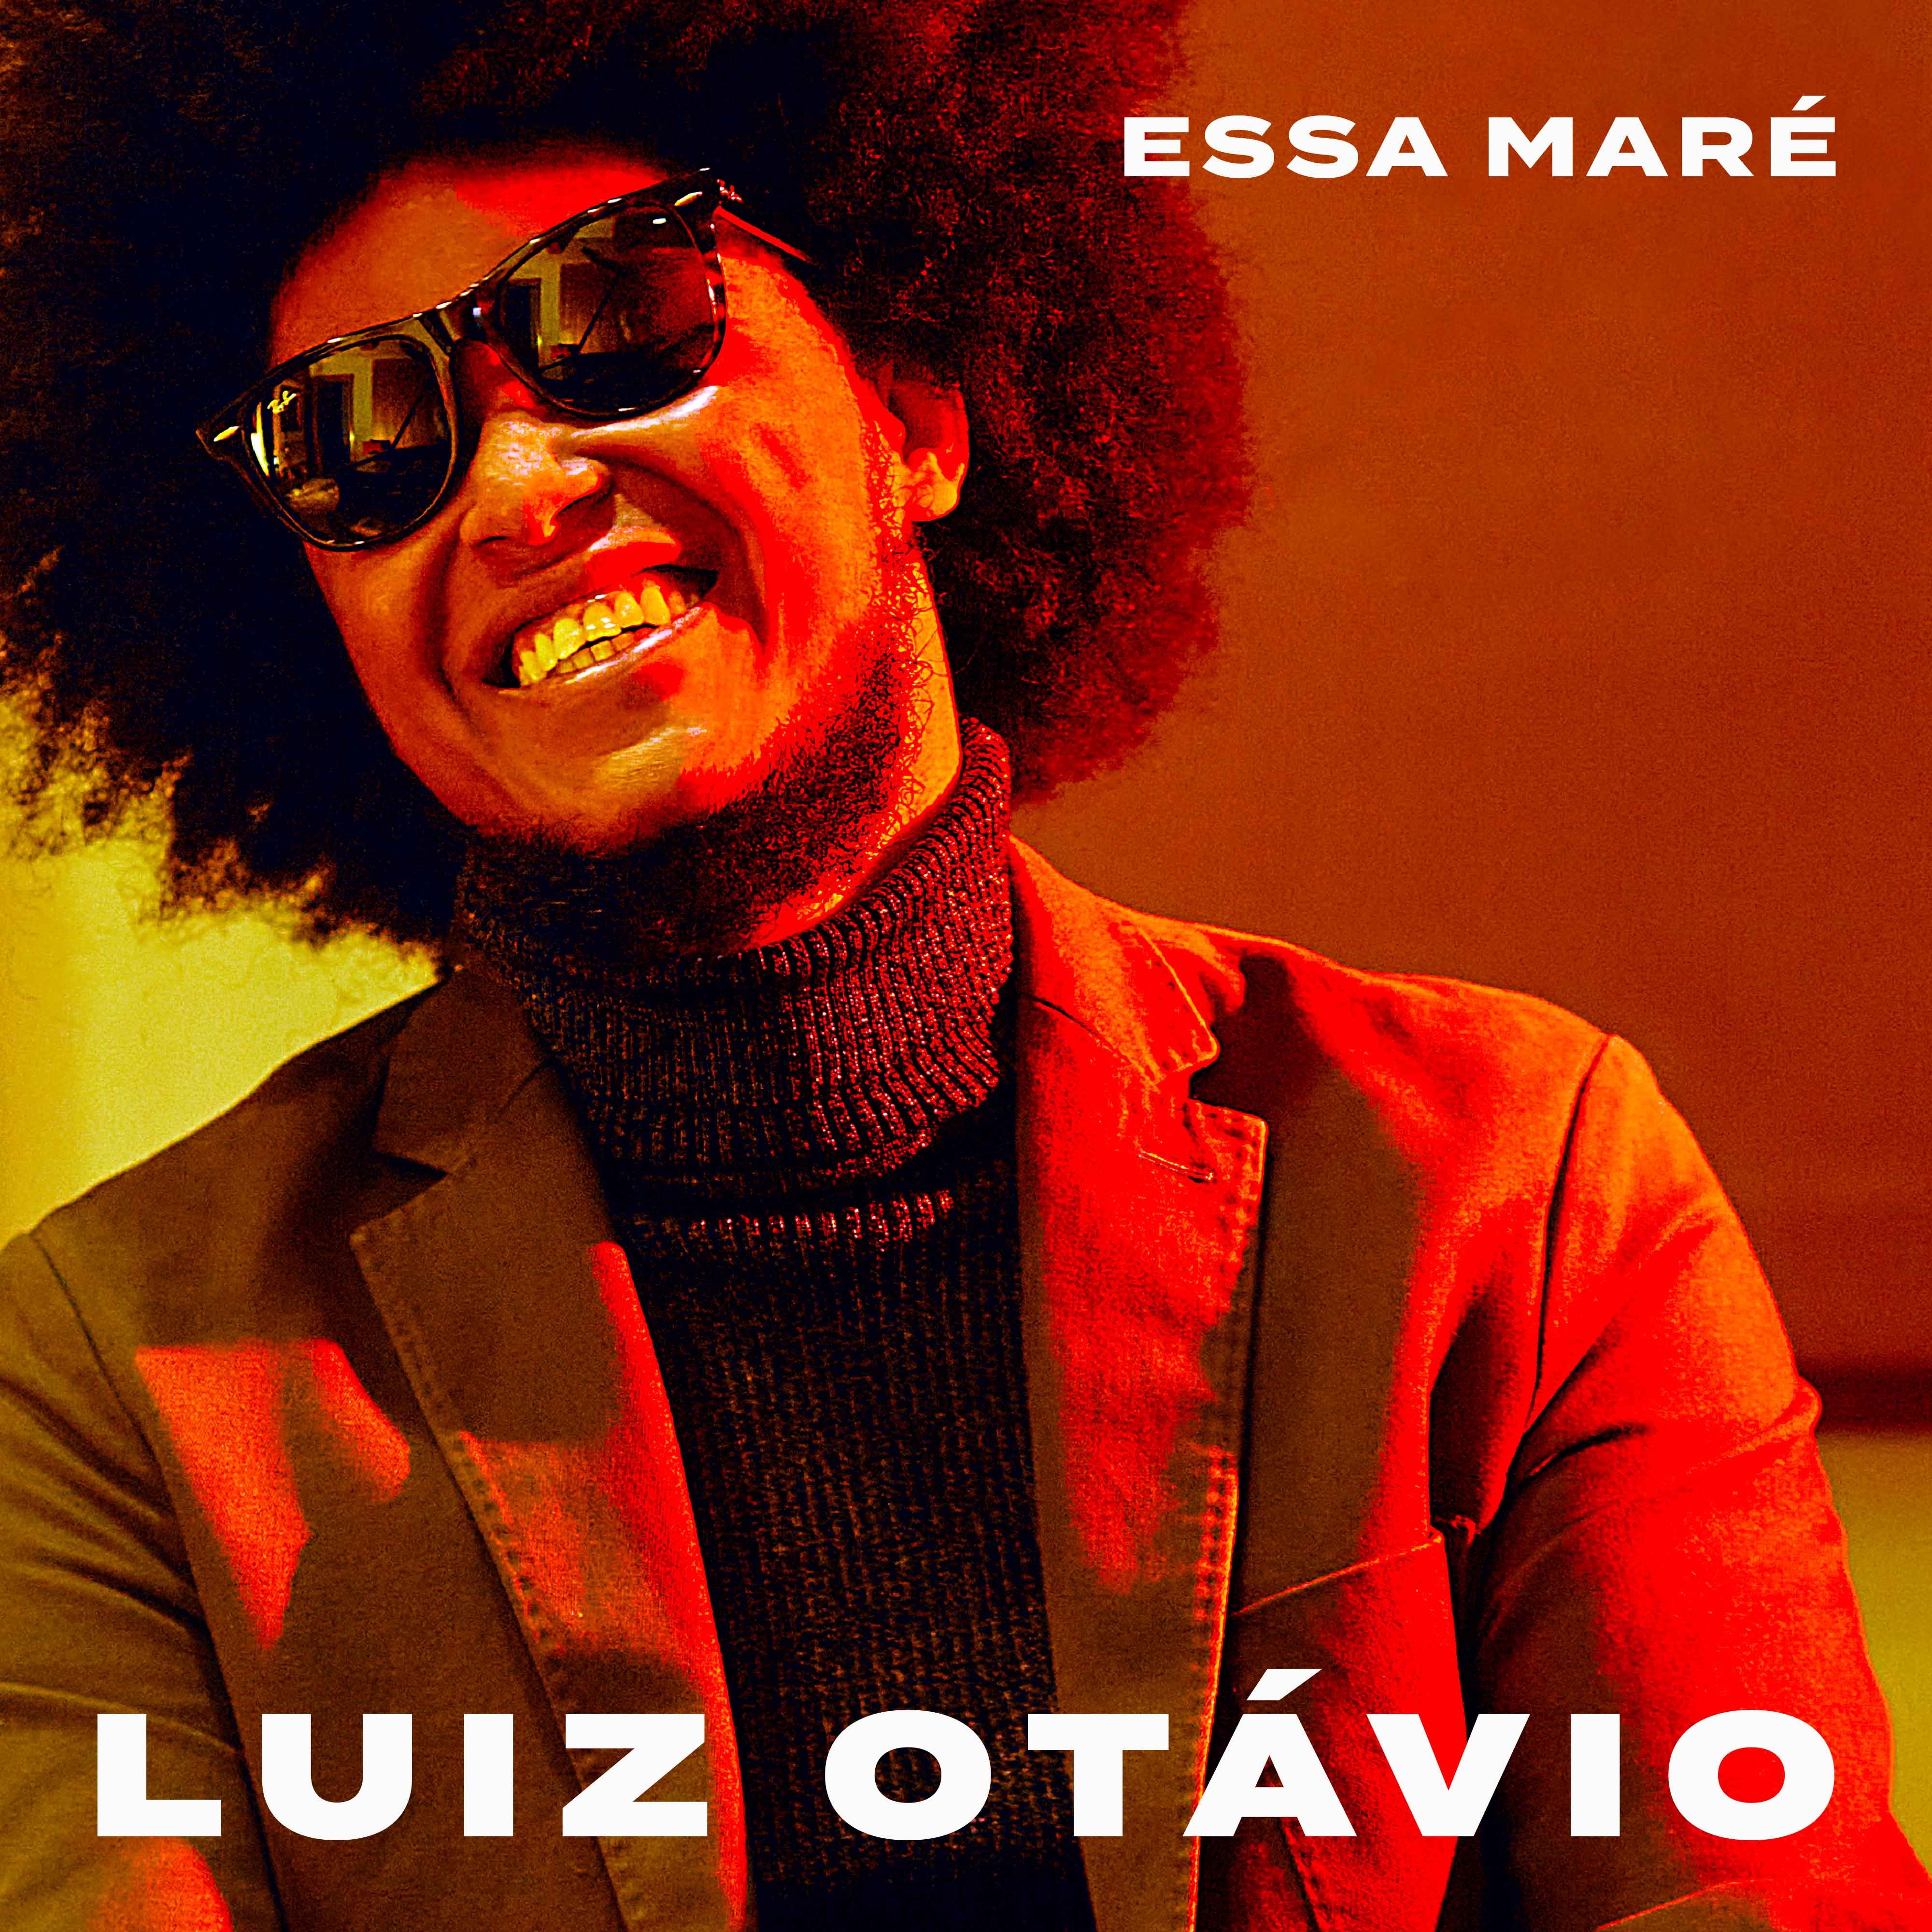 Luiz Otávio ecoa com paixão o som dos bailes dos anos 1970 no tom black Rio do disco 'Essa maré'